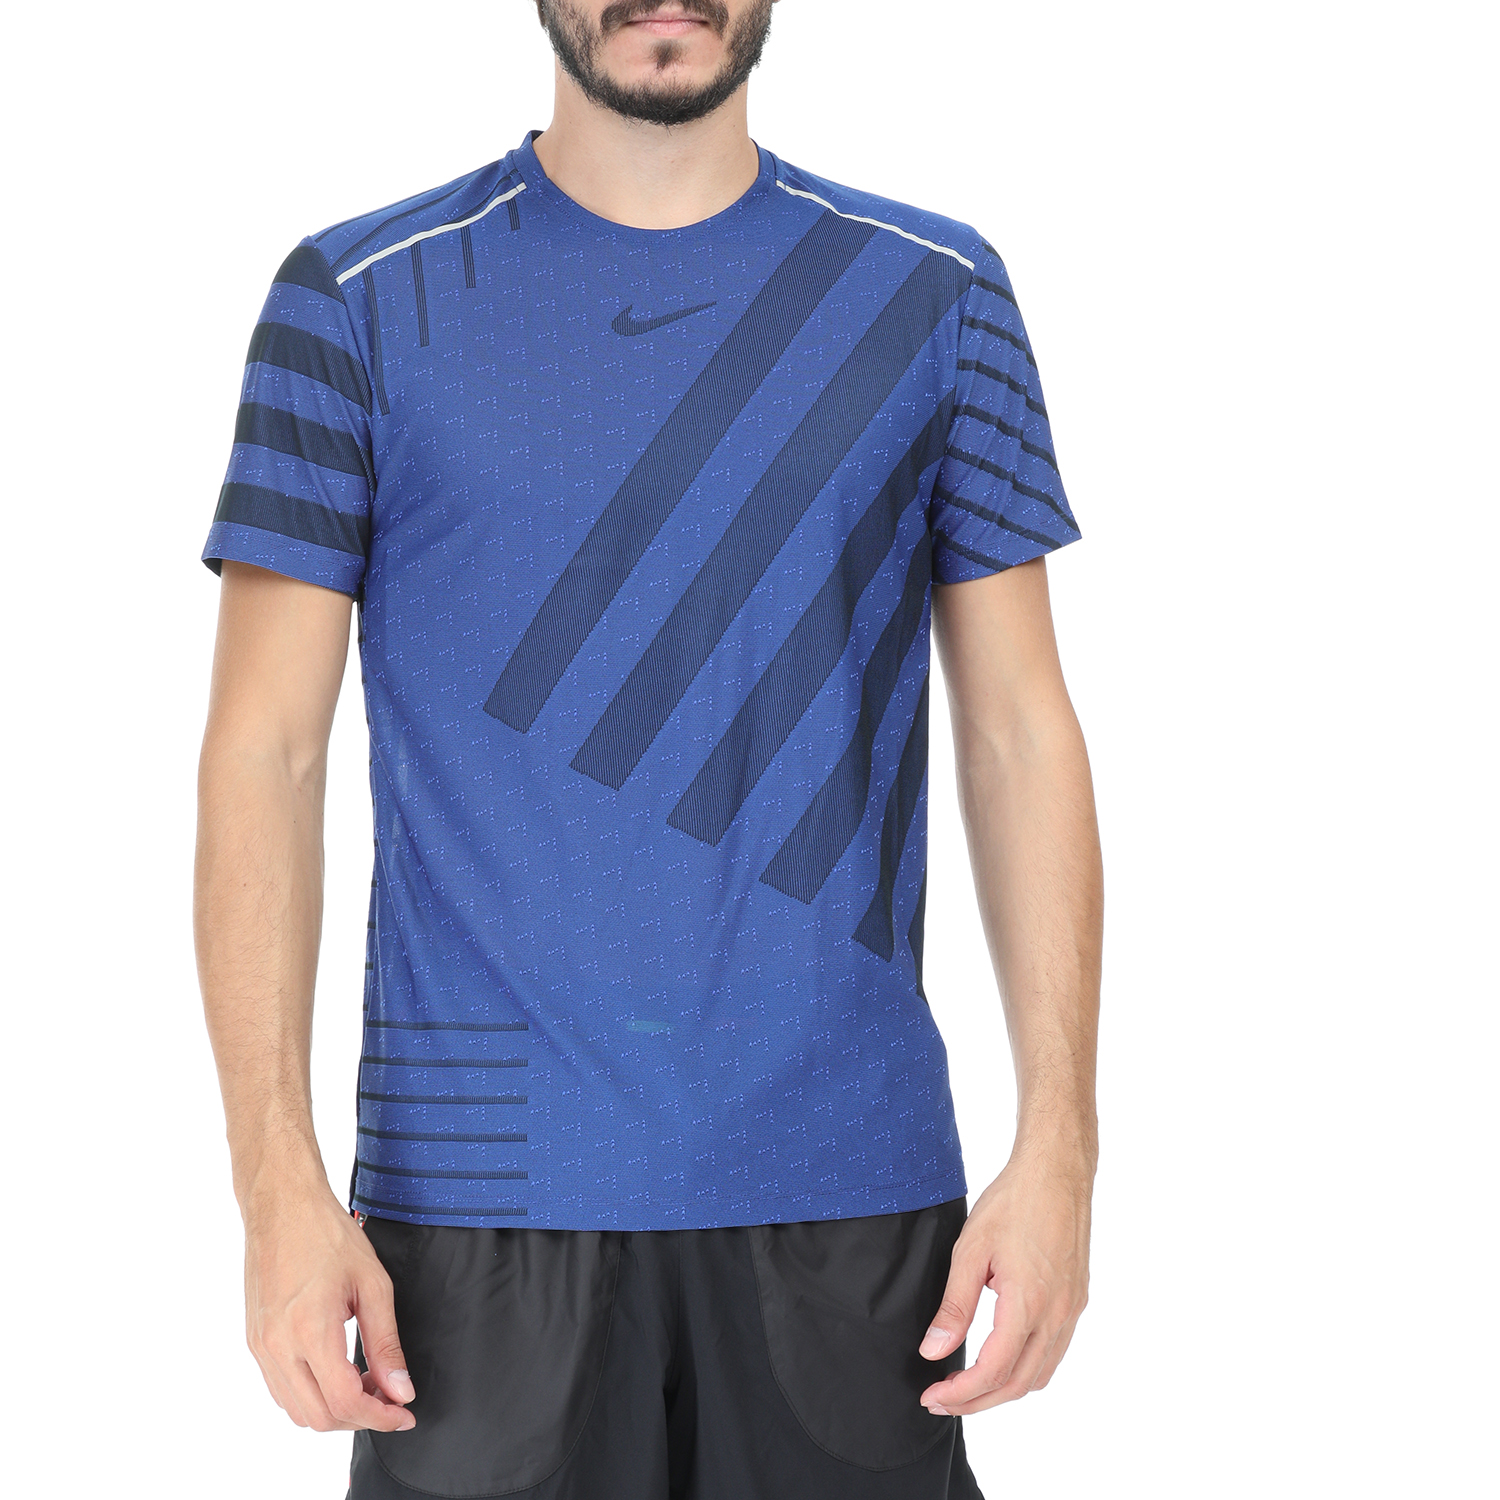 Ανδρικά/Ρούχα/Αθλητικά/T-shirt NIKE - Ανδρικό t-shirt NIKE TECH KNIT COOL SS NV μπλε